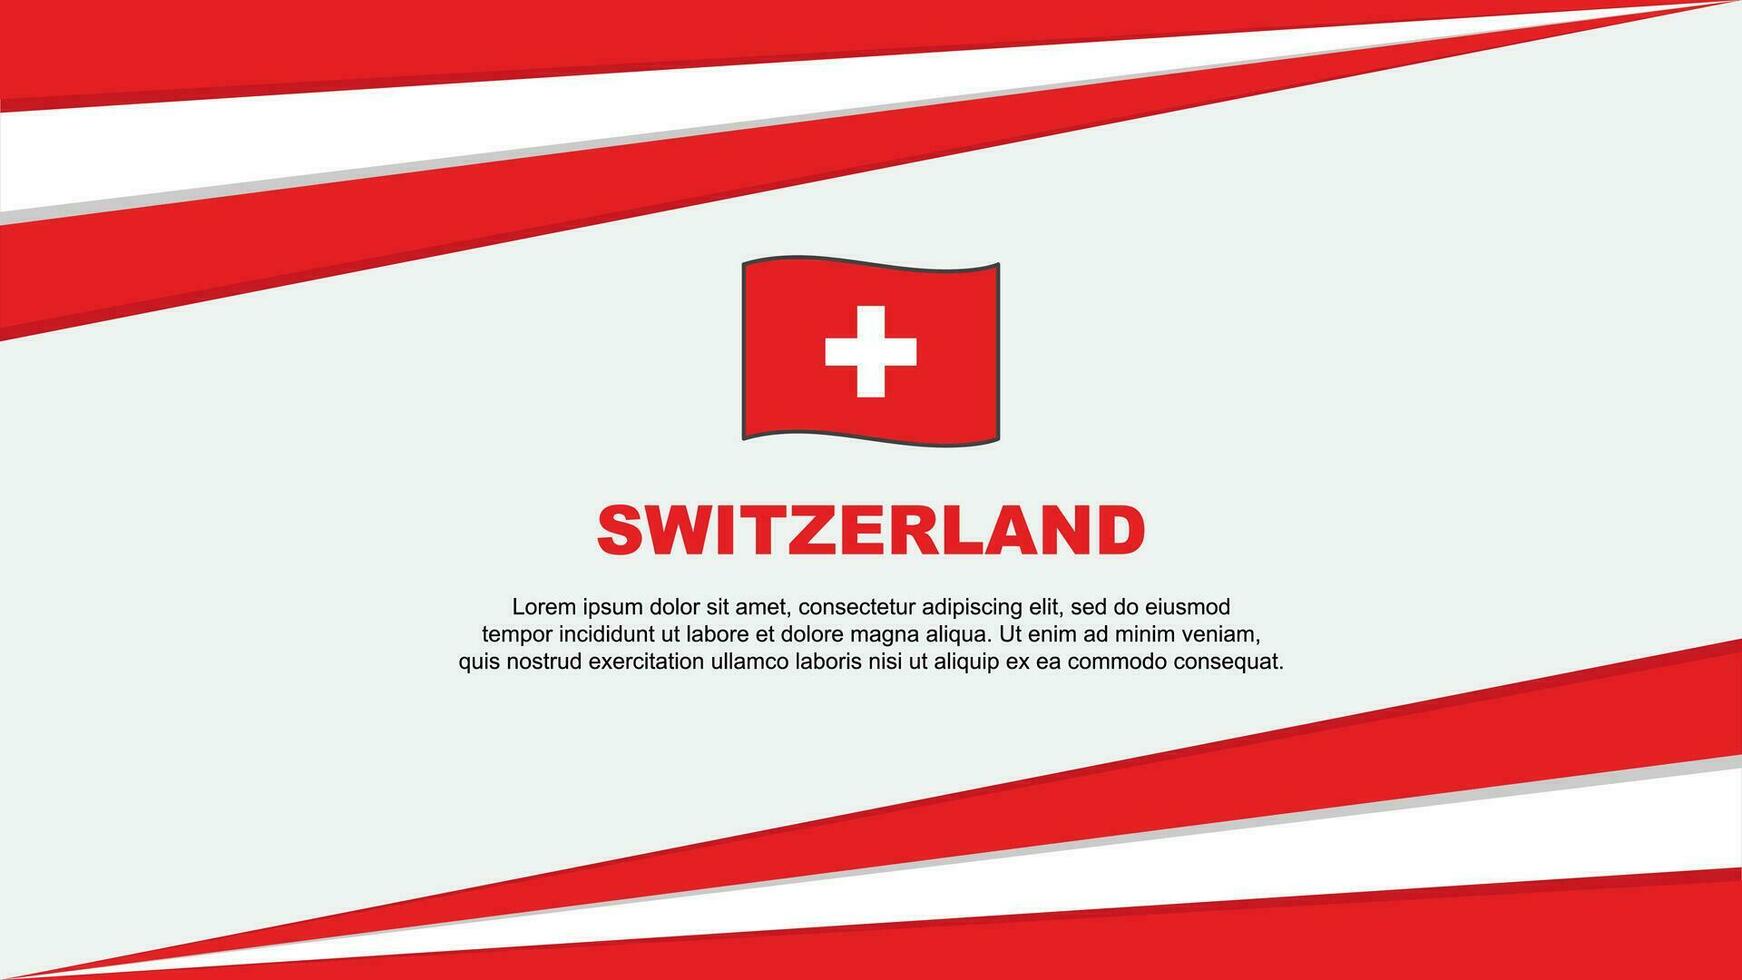 Switzerland Flag Abstract Background Design Template. Switzerland Independence Day Banner Cartoon Vector Illustration. Switzerland Design